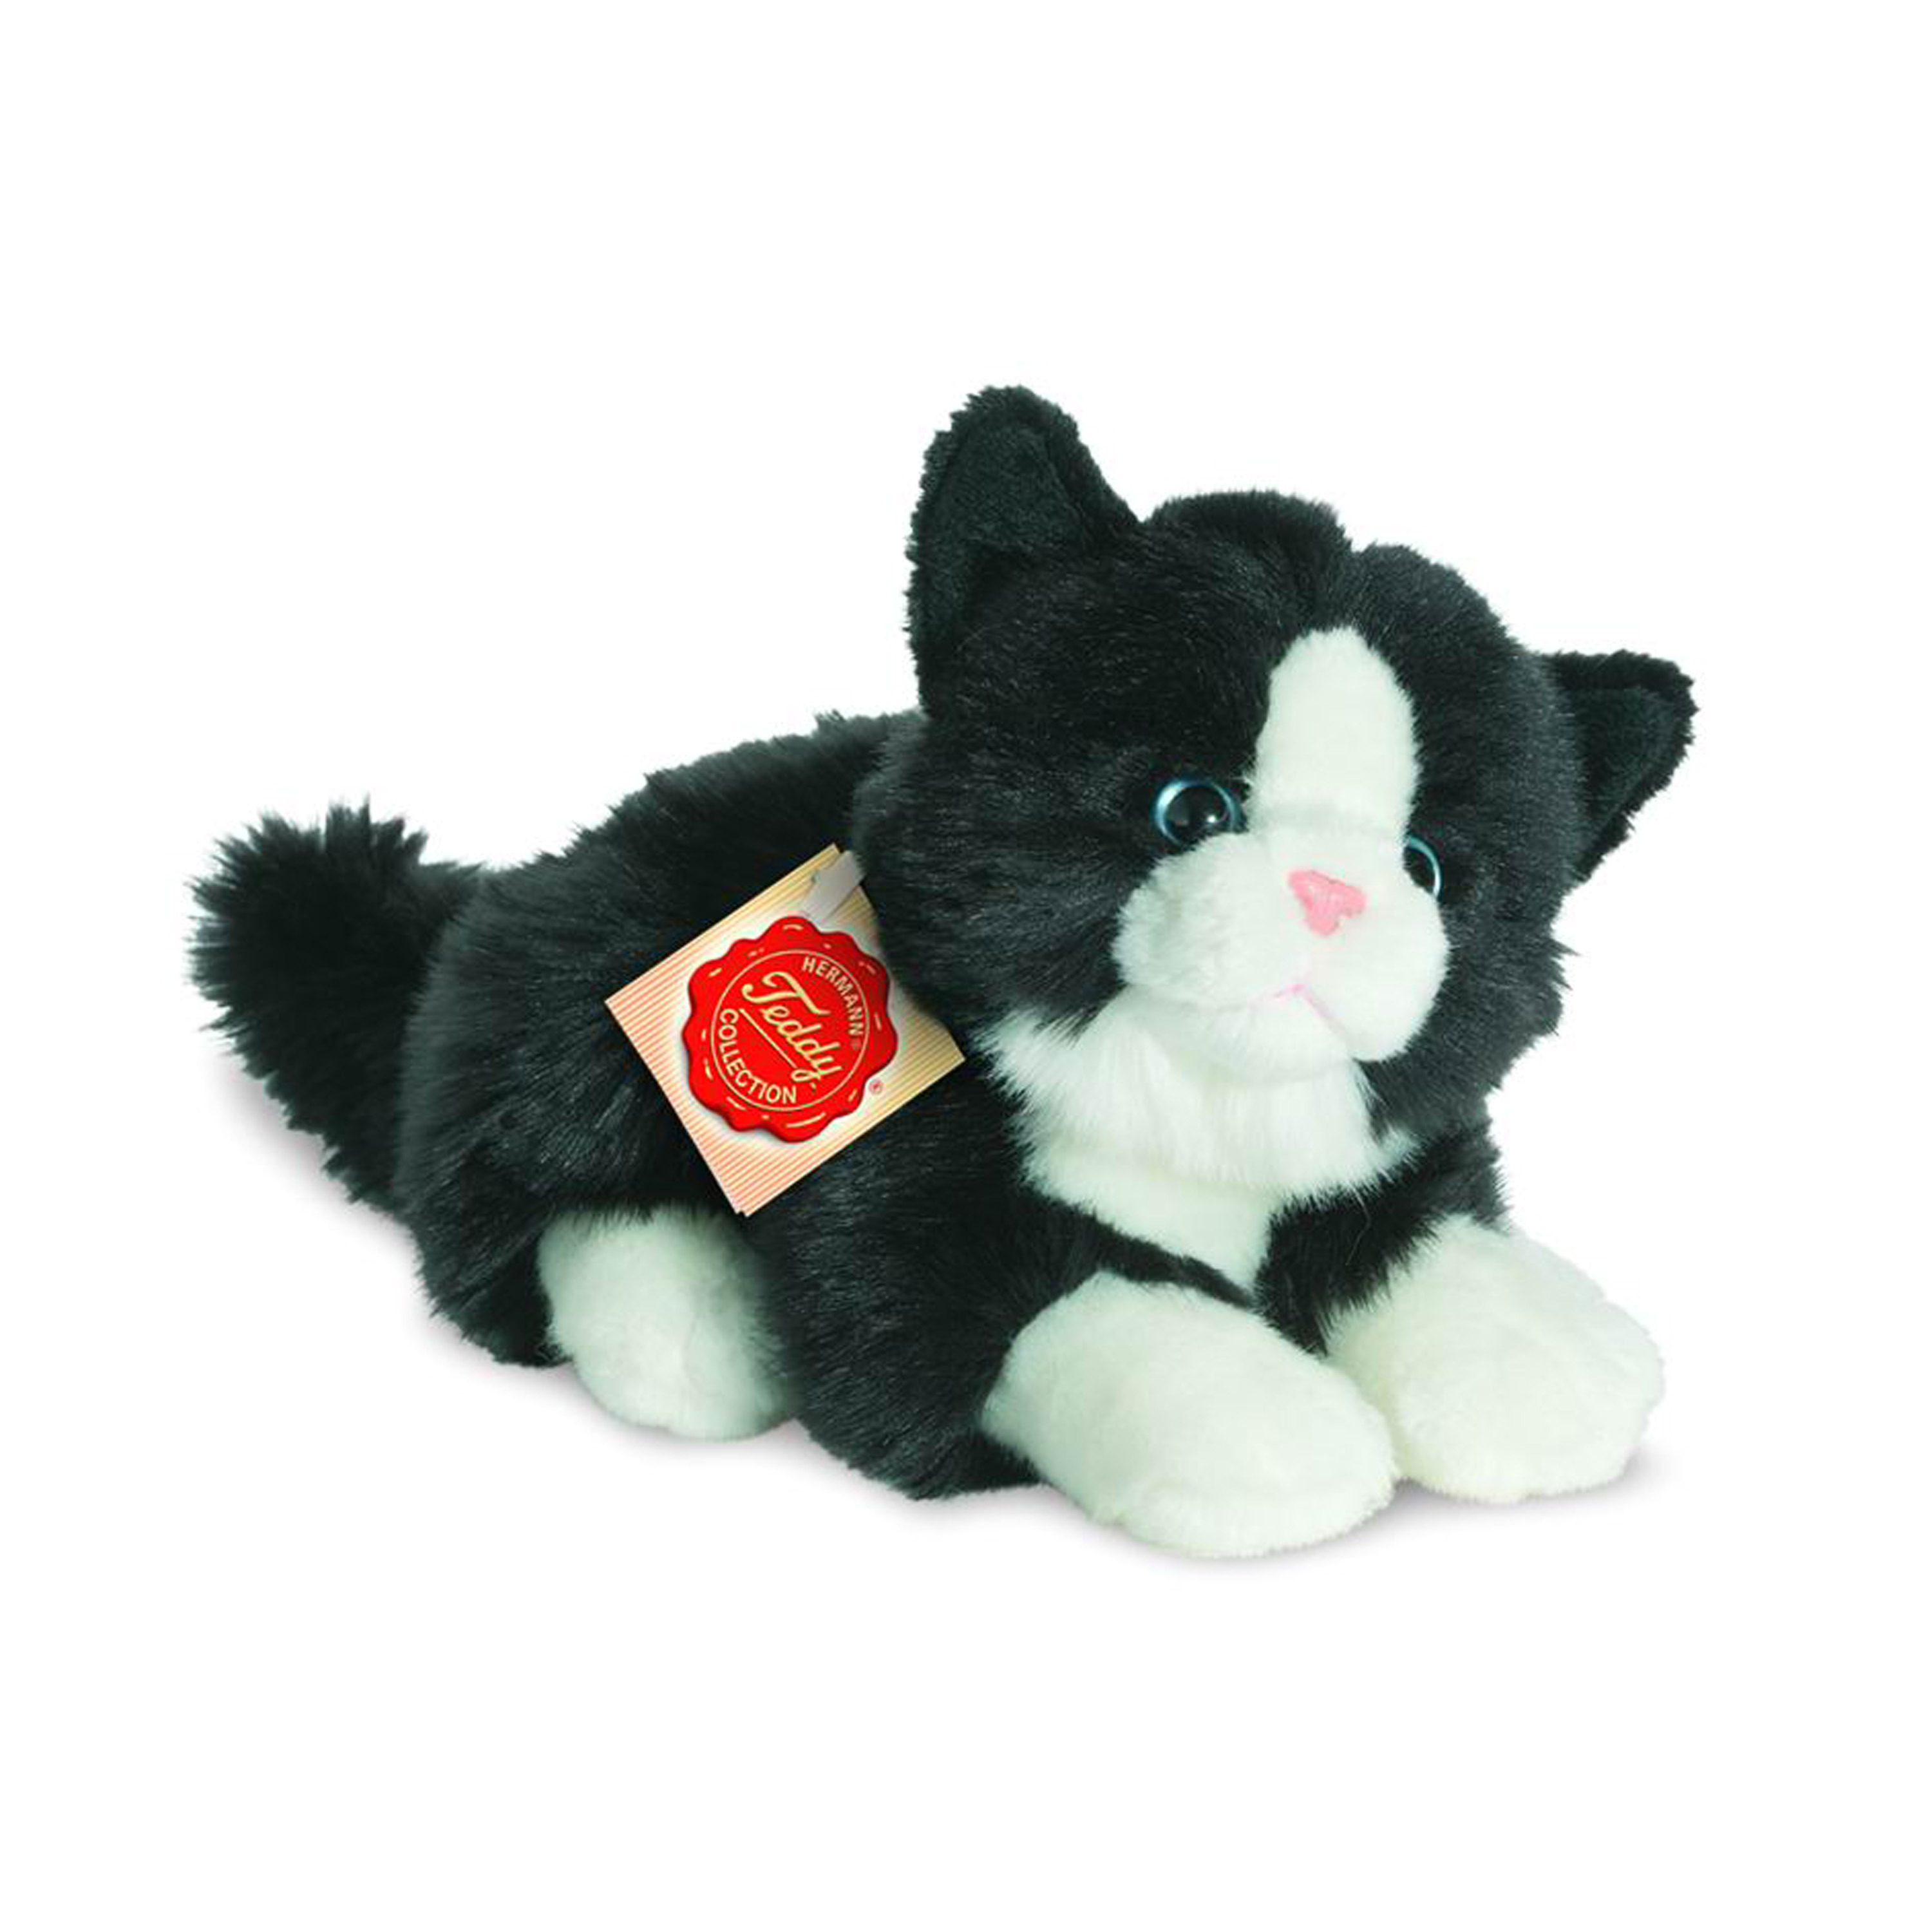 Knuffeldier kat-poes zachte pluche stof premium kwaliteit knuffels zwart-wit 20 cm